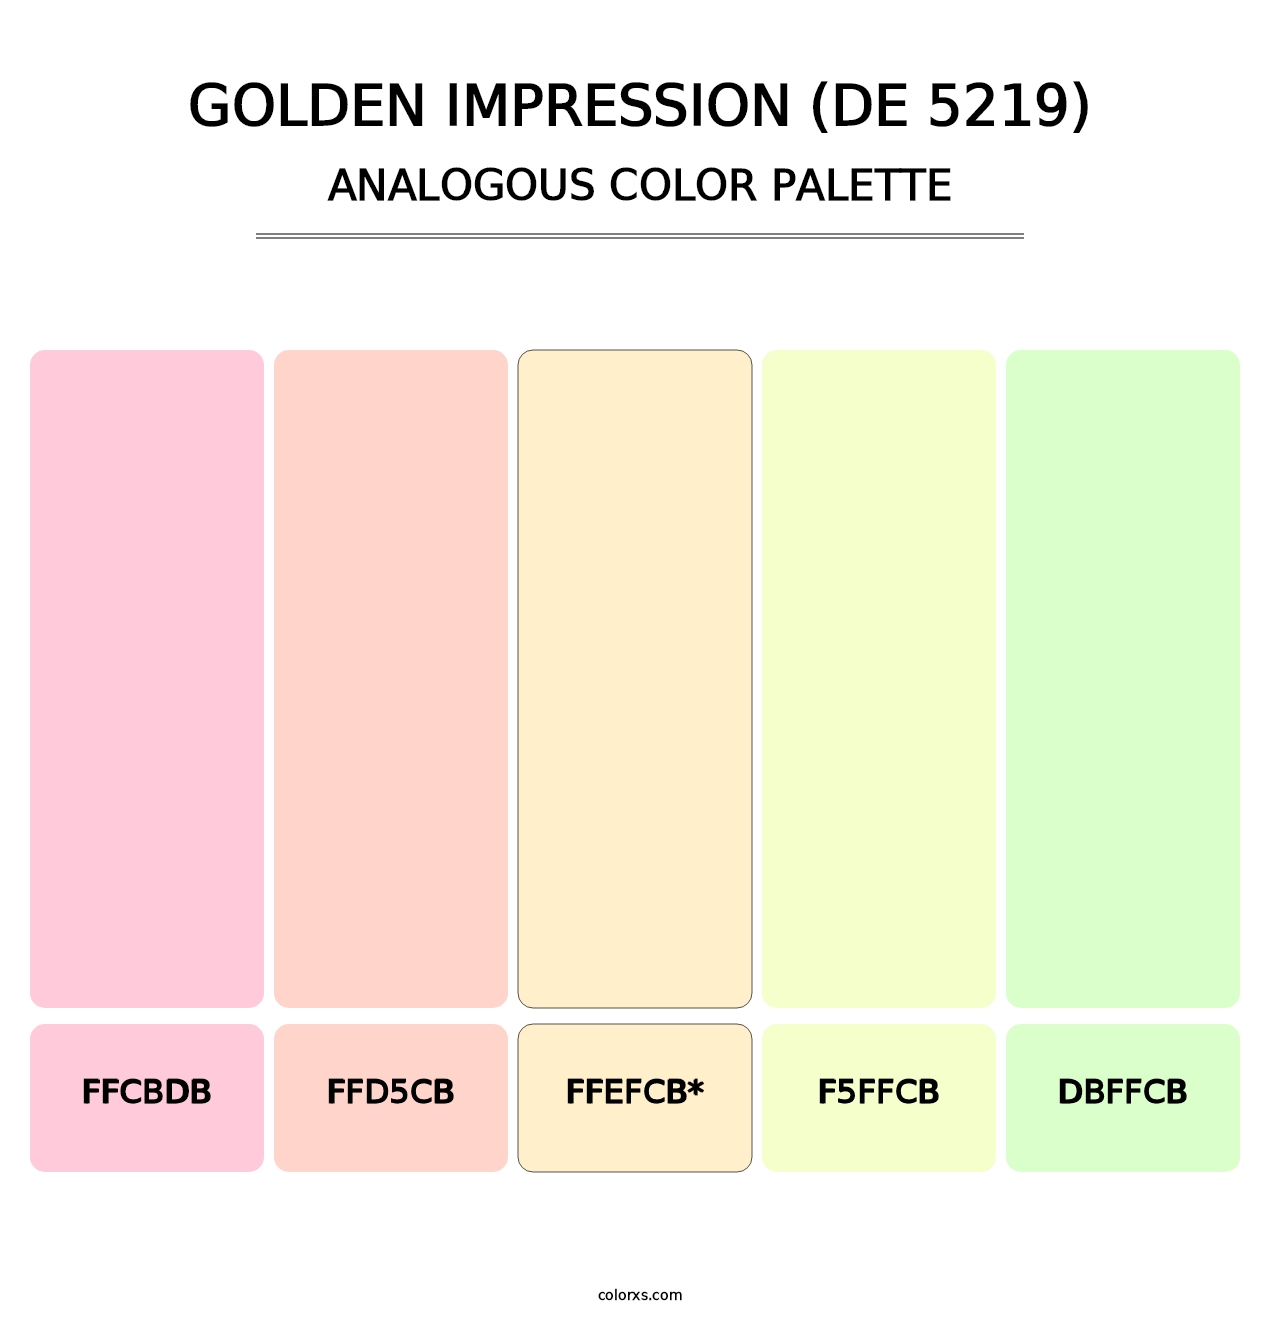 Golden Impression (DE 5219) - Analogous Color Palette